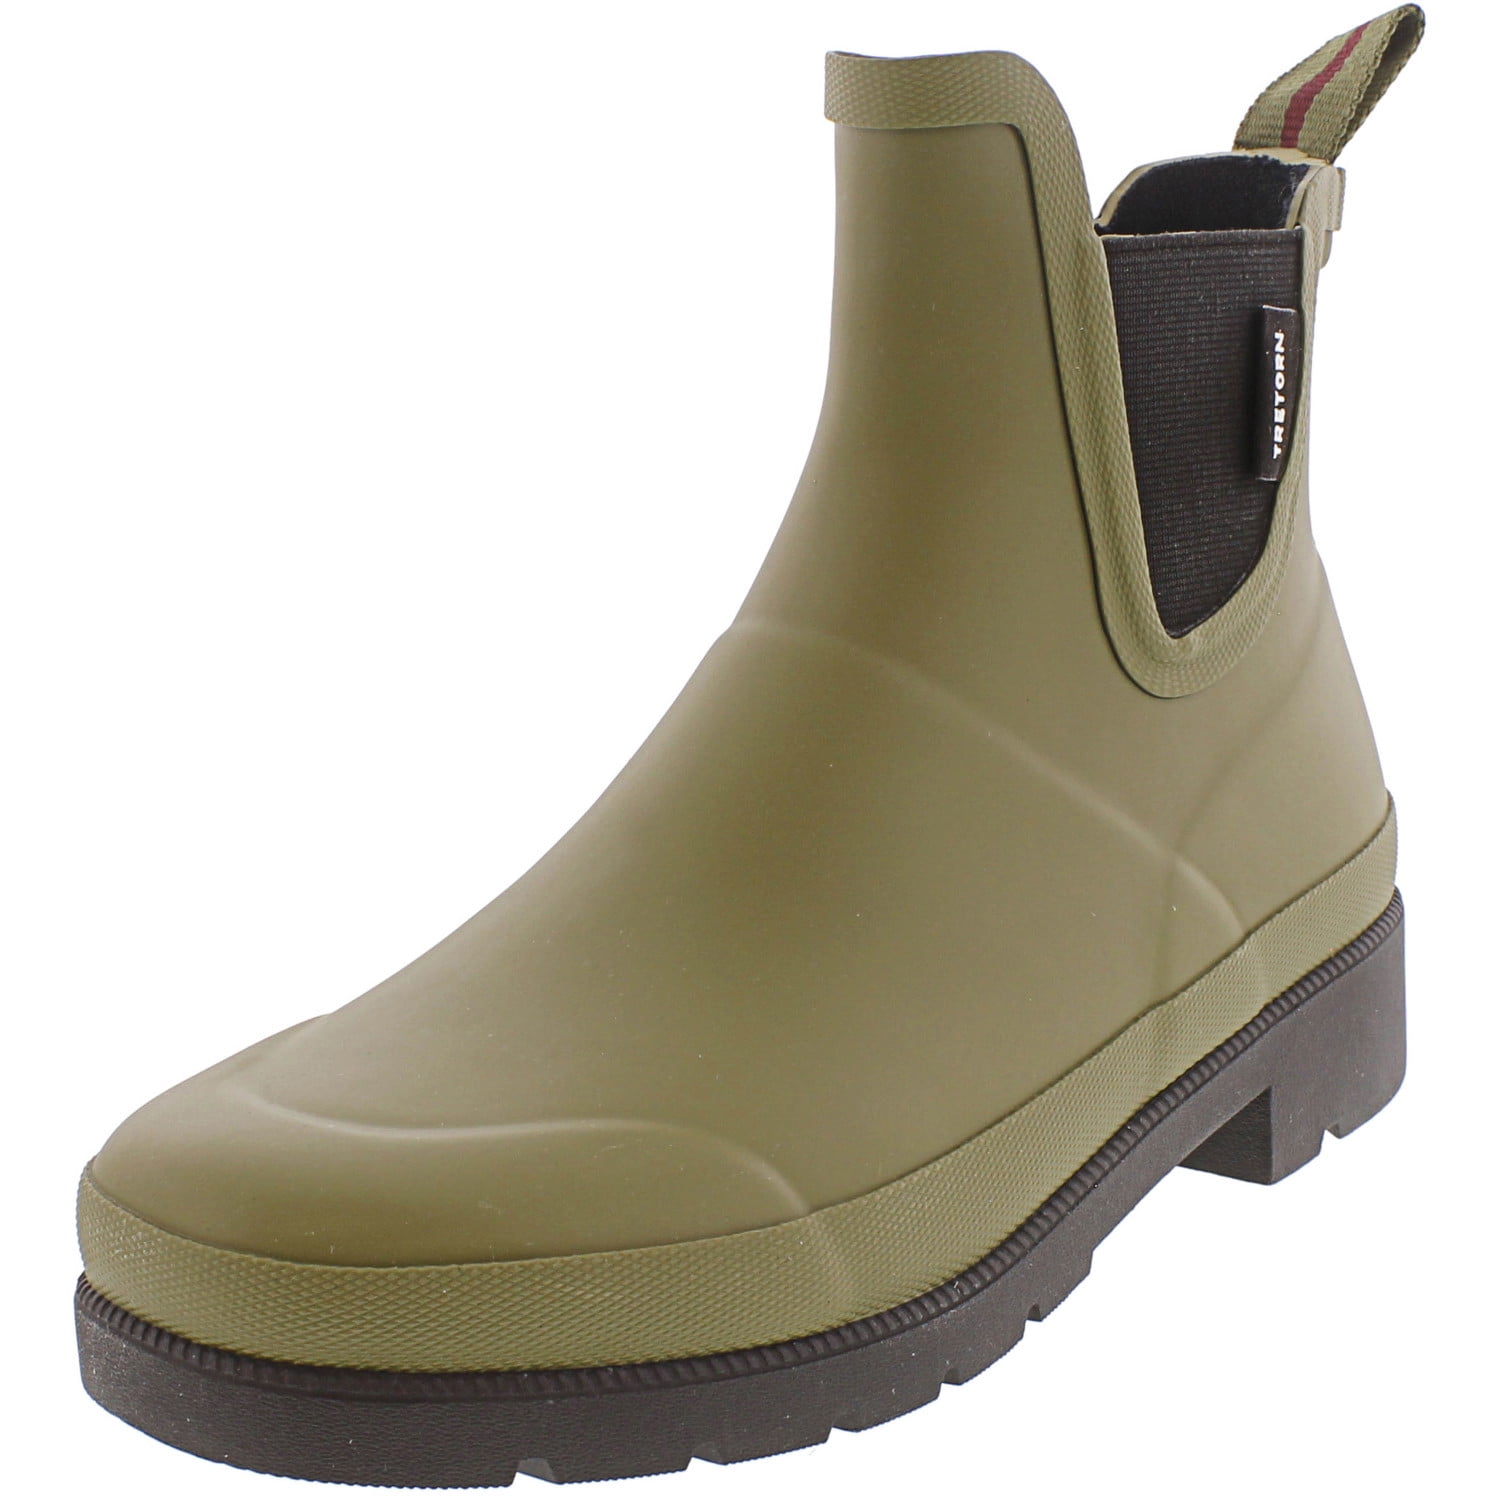 tretorn lina zip rain boots